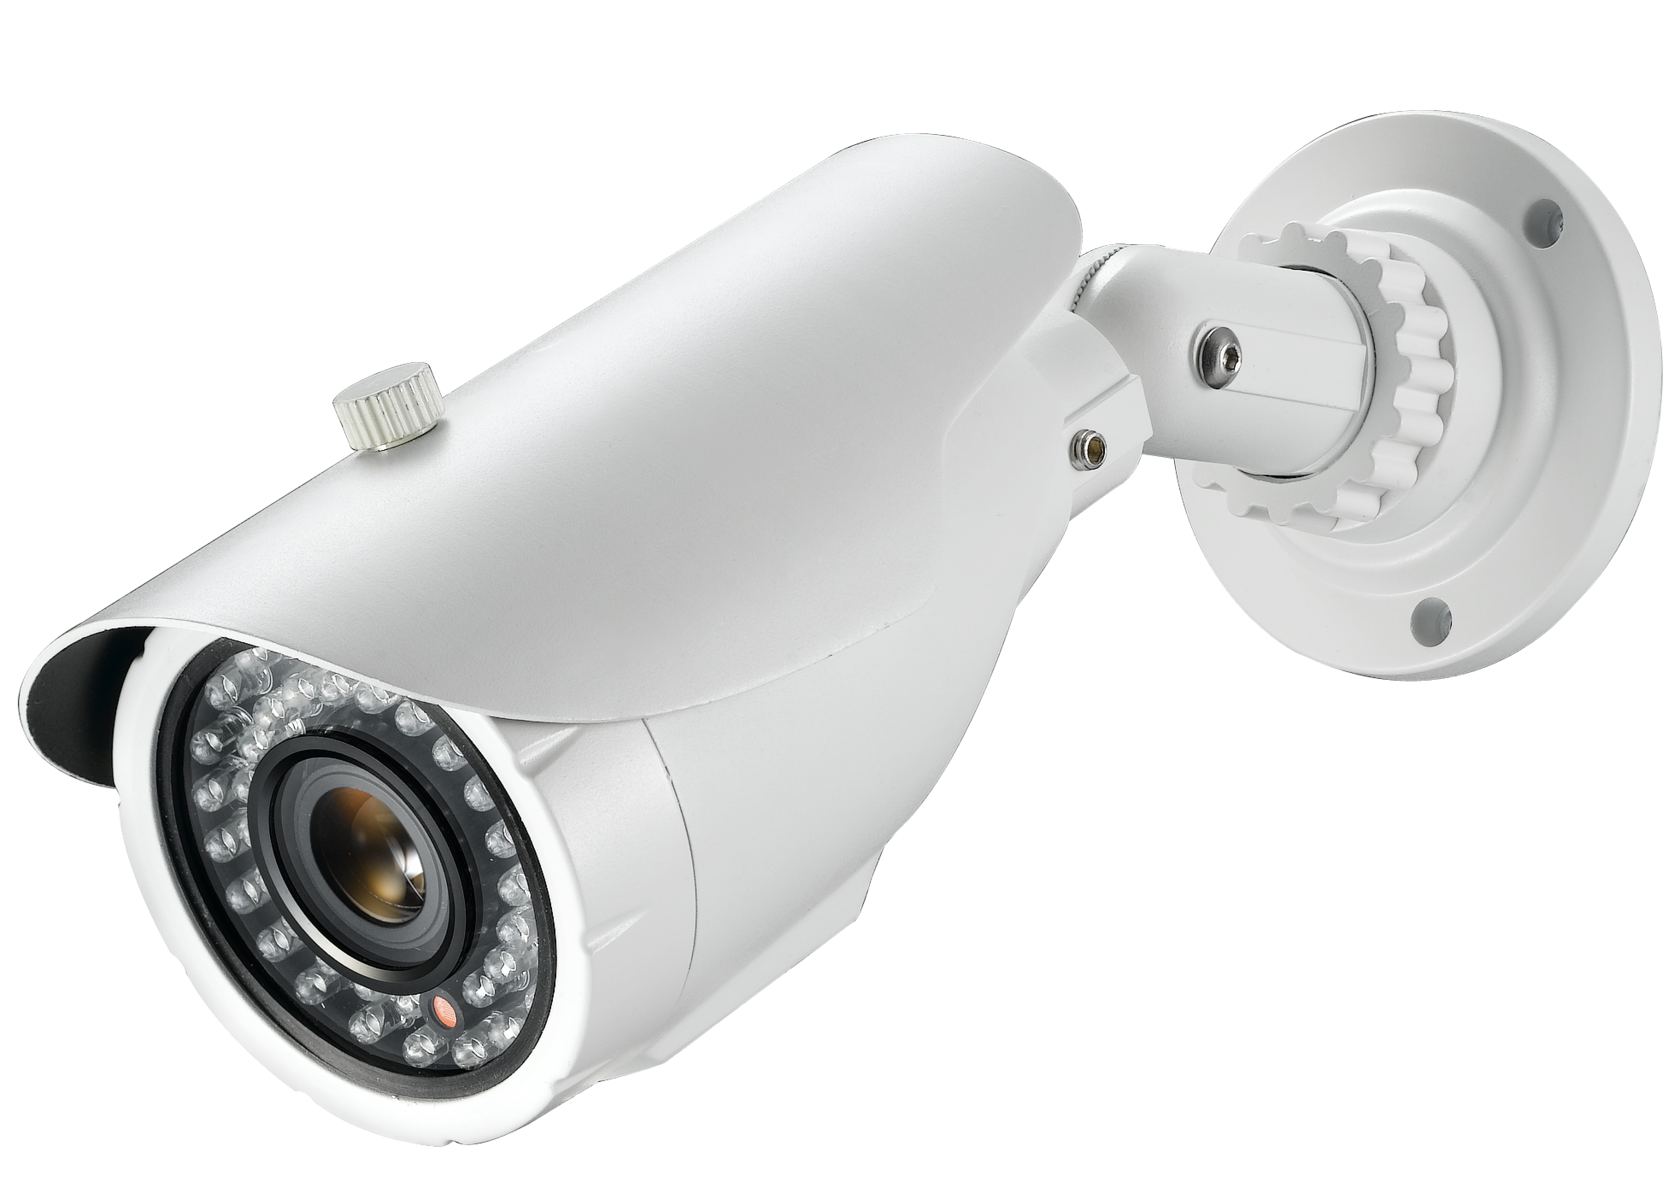 Камеры видеонаблюдения томск. Ip66 камера видеонаблюдения. EVR-CS-1615-AHD цветная уличная AHD CVBS видеокамера 720p f 3.6мм. Камера bolid VCG-320. IP камера UNV UNV IPC-t124-apf28 2.8 мм с ИК-подсветкой.